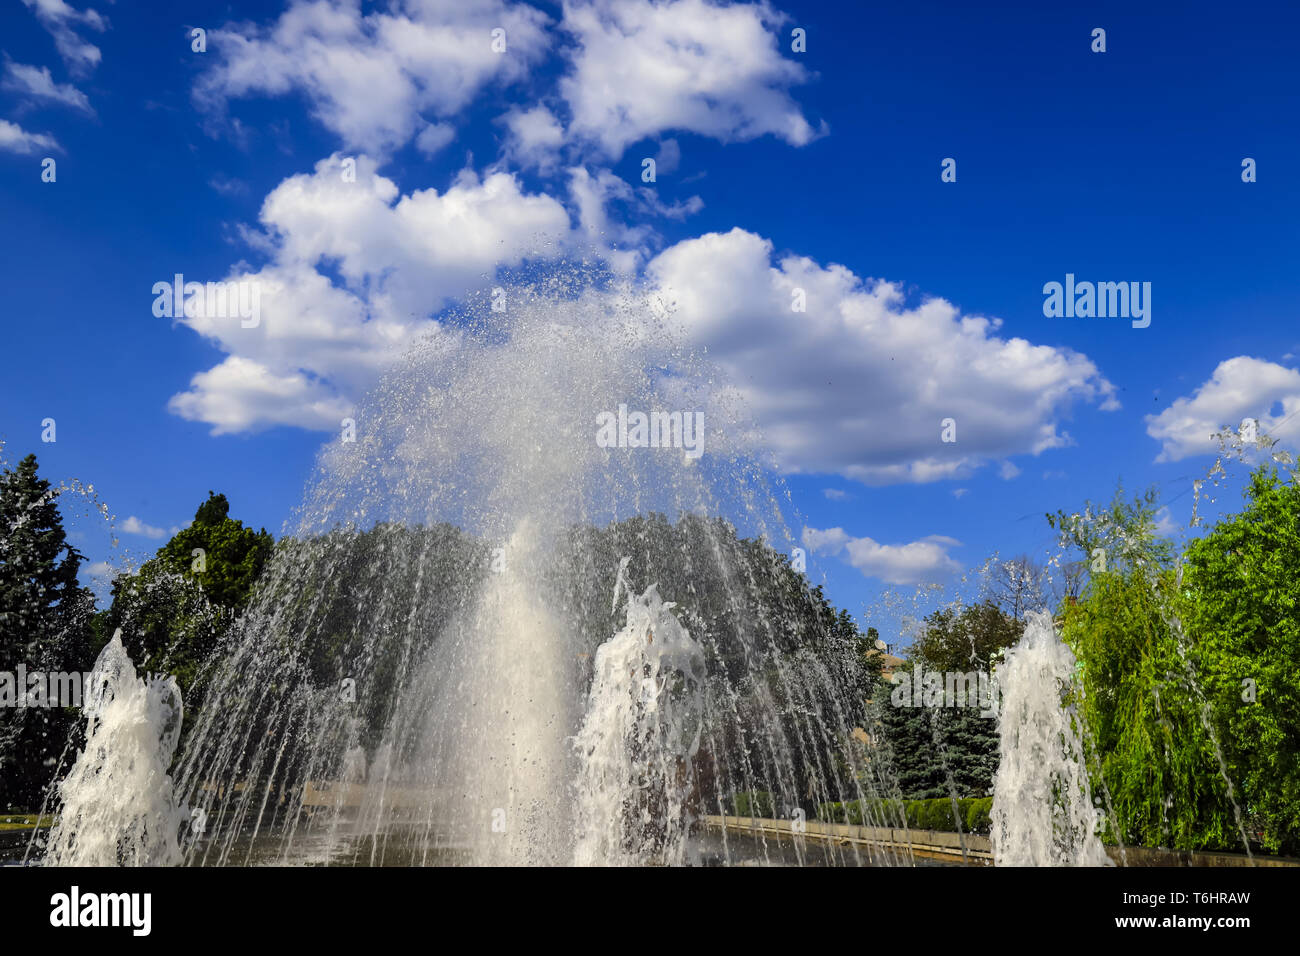 Belle fontaine sur la toile de beaux nuages, printemps, été cityscape, Dnepropetrovsk, Ukraine, ville Dniepr Banque D'Images